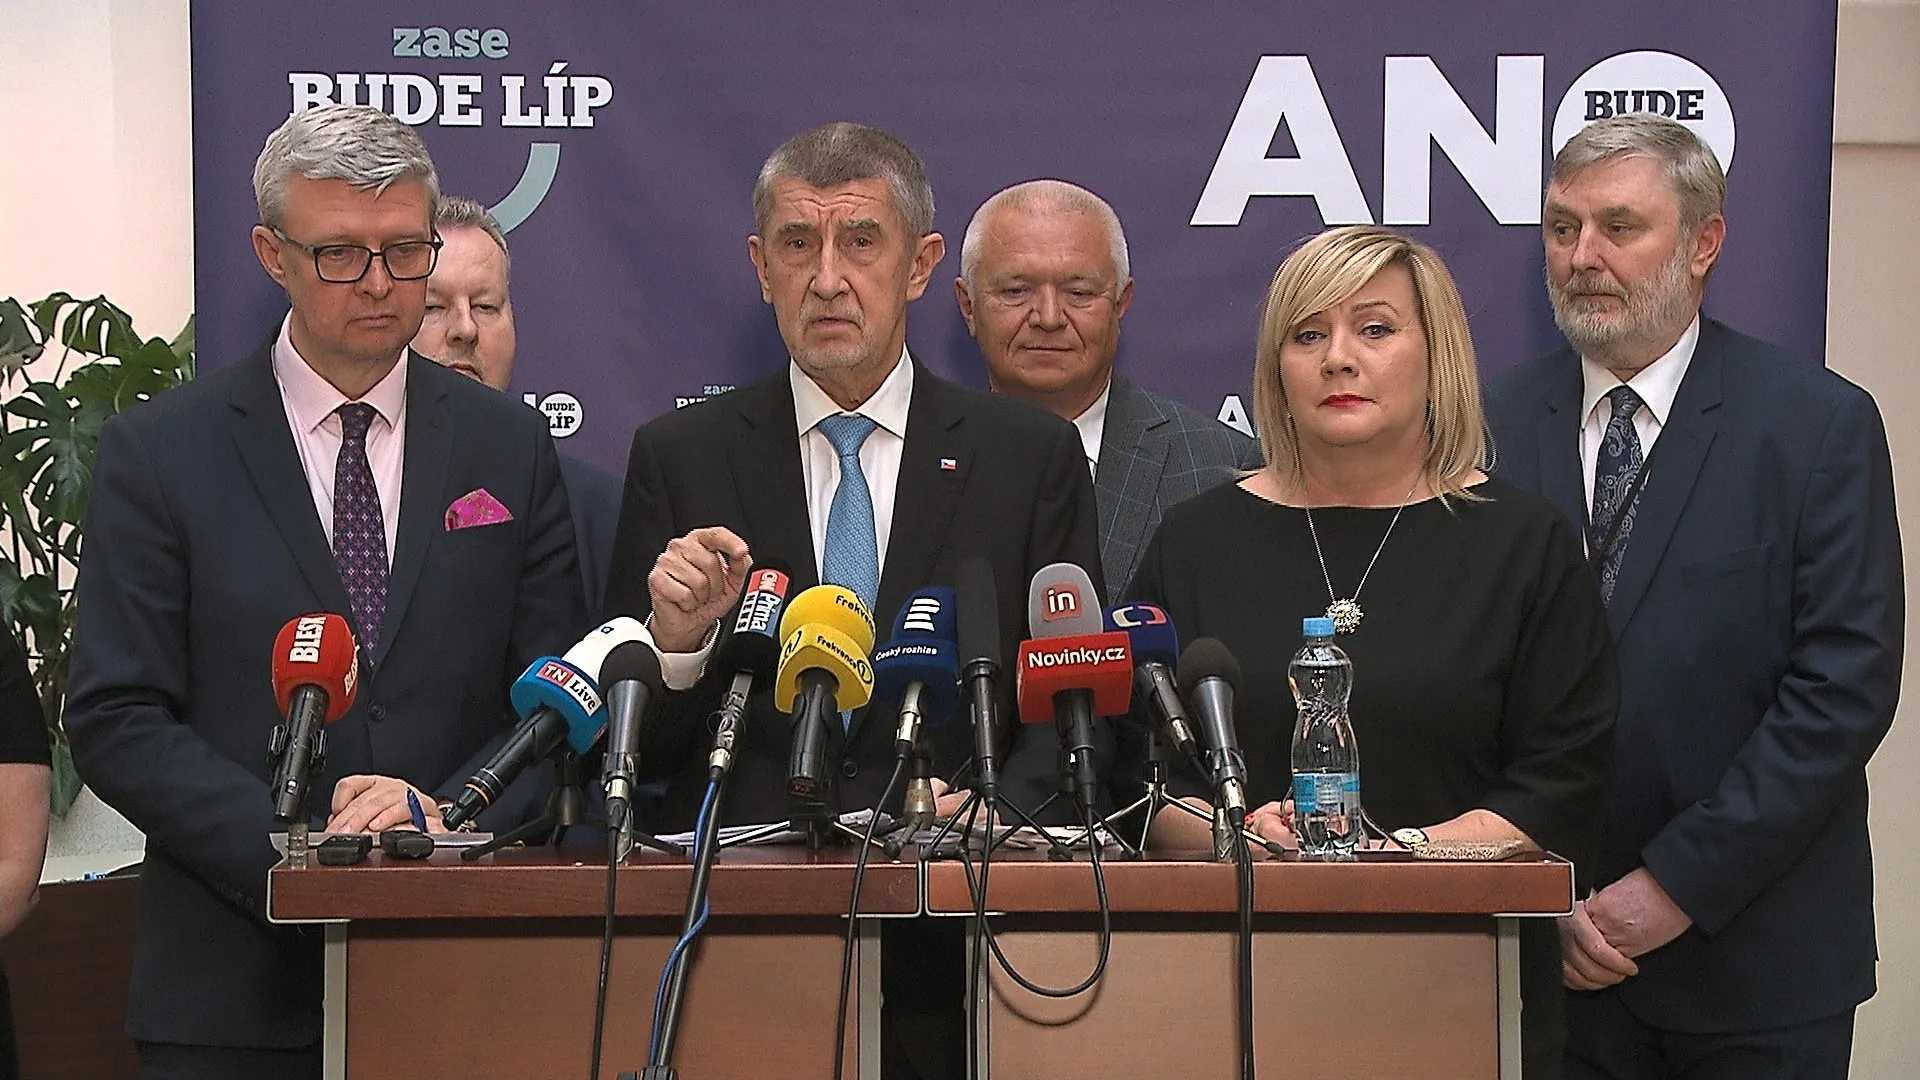 ANO zrušilo účast na jednání o důchodech na Hradě, uvedla prezidentská kancelář